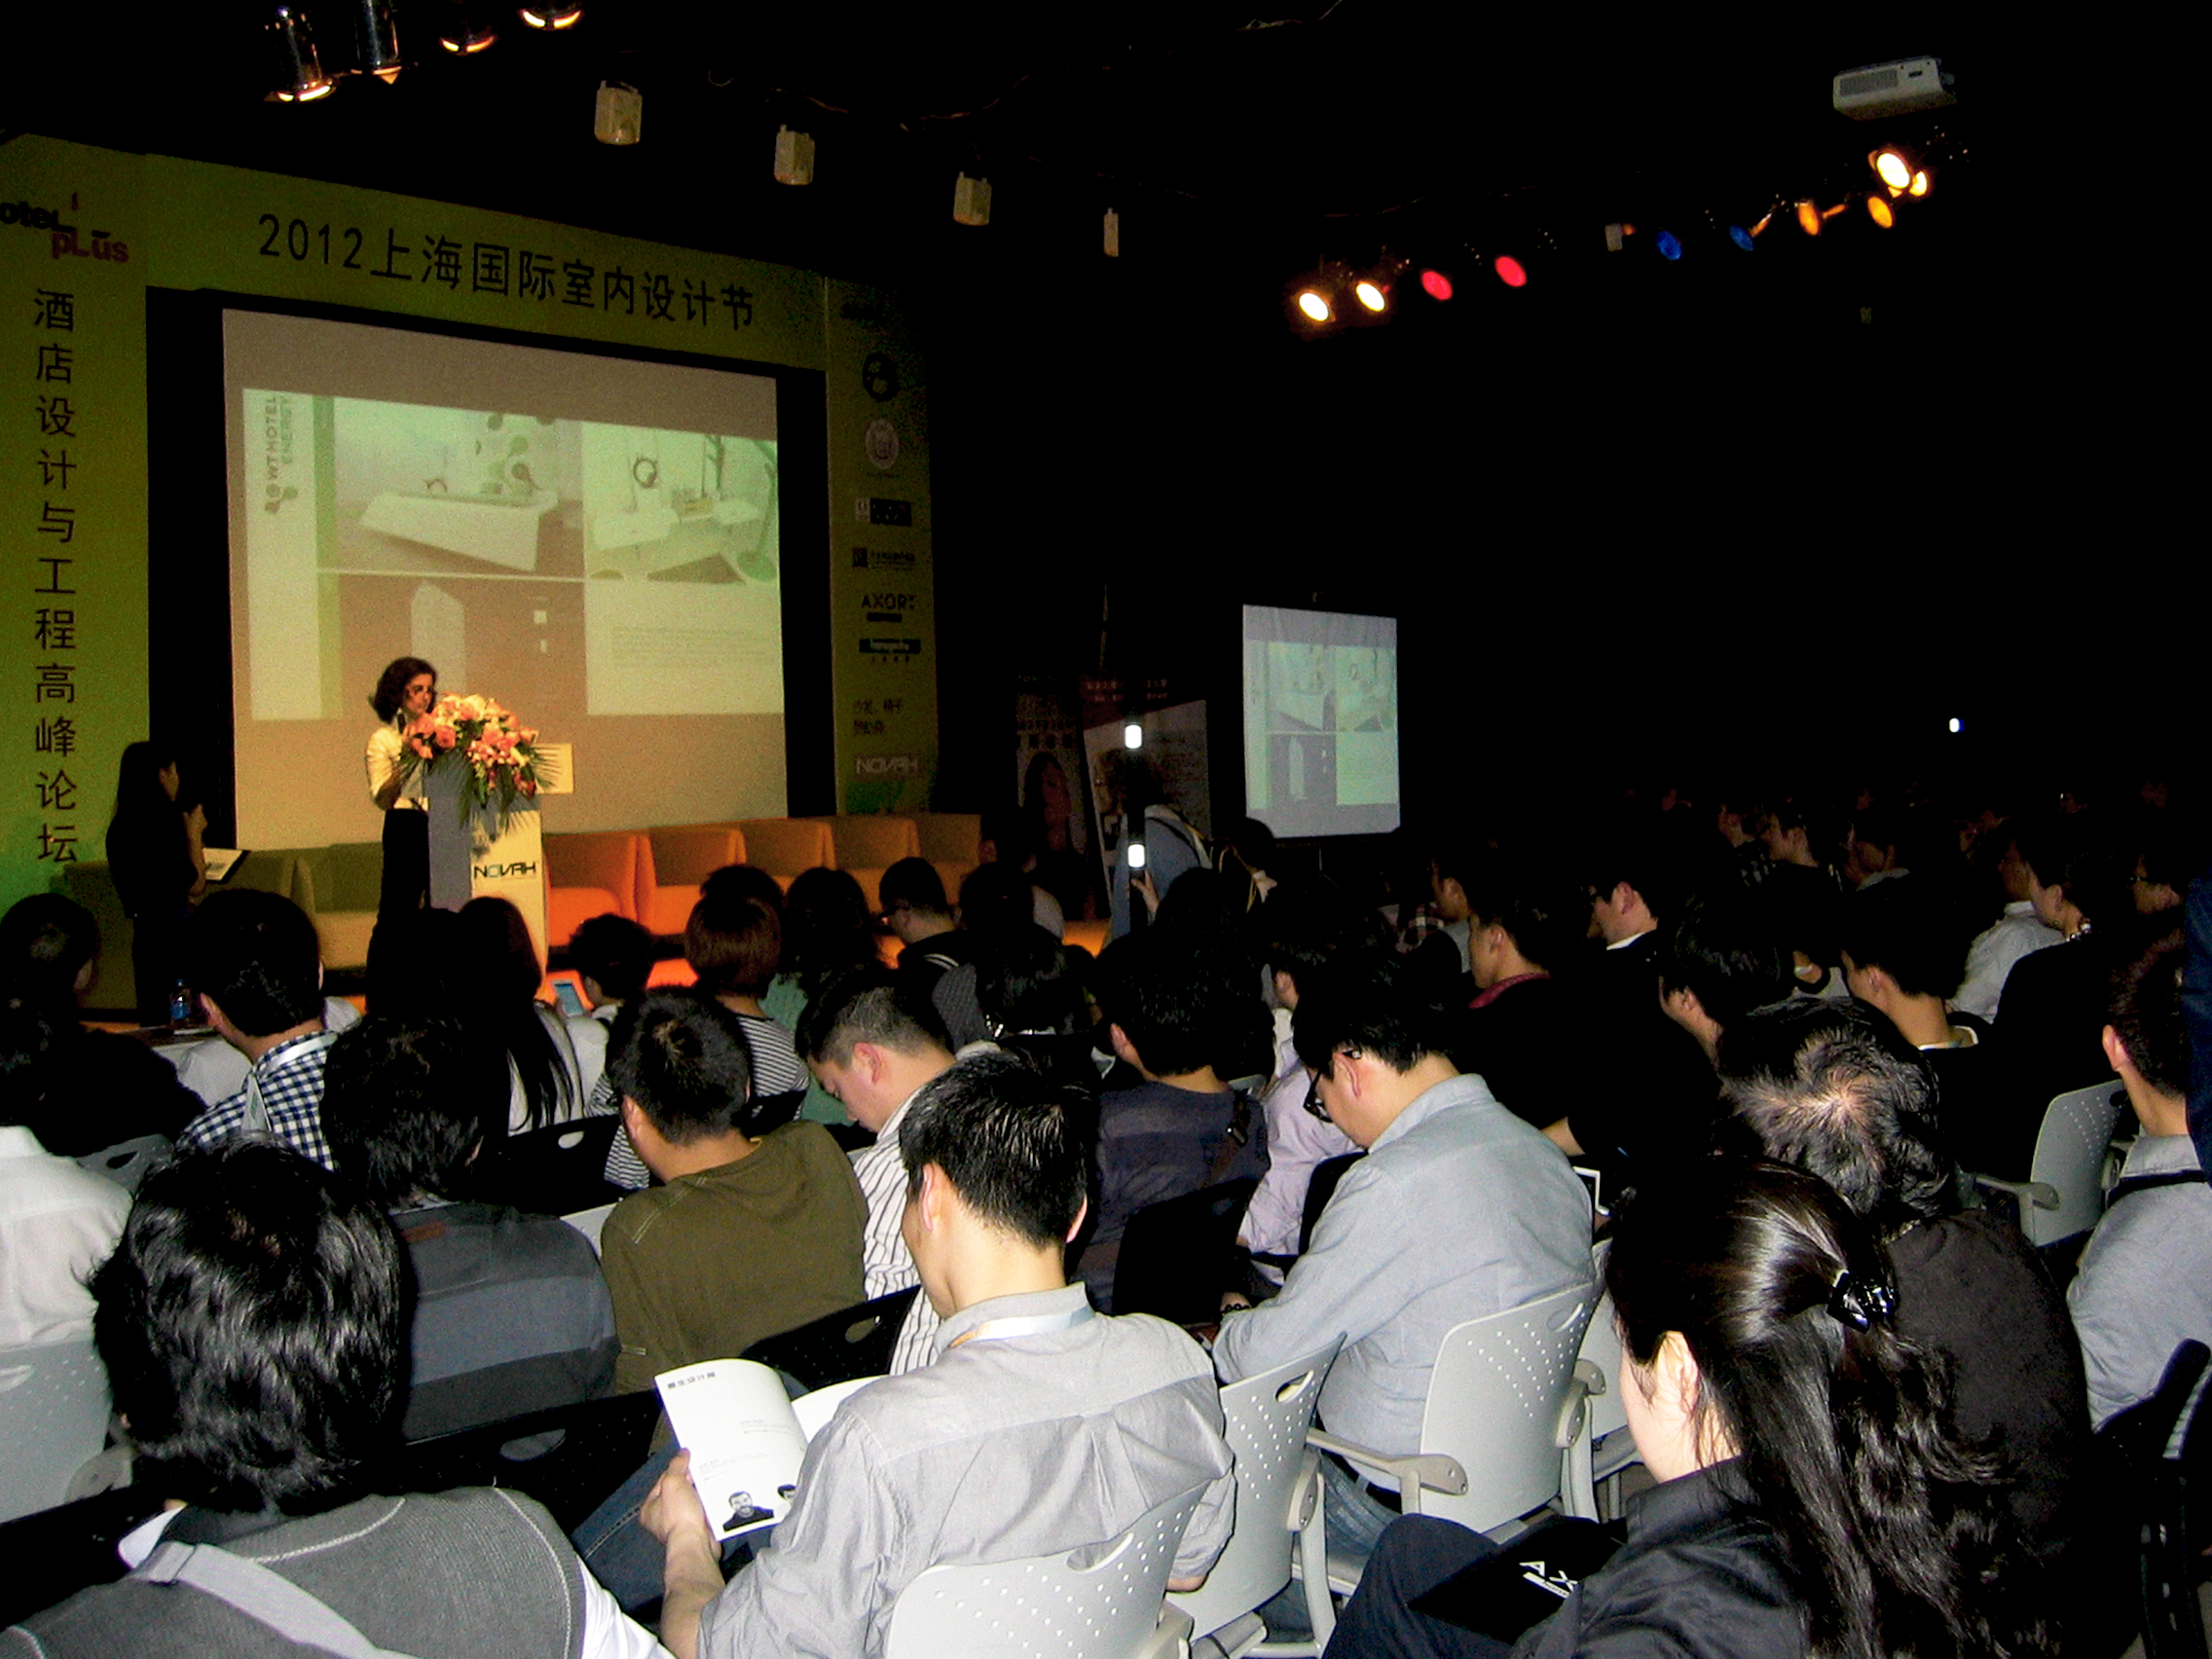 WT Ceo Vip speech at International Interior Design Festival, Shanghai